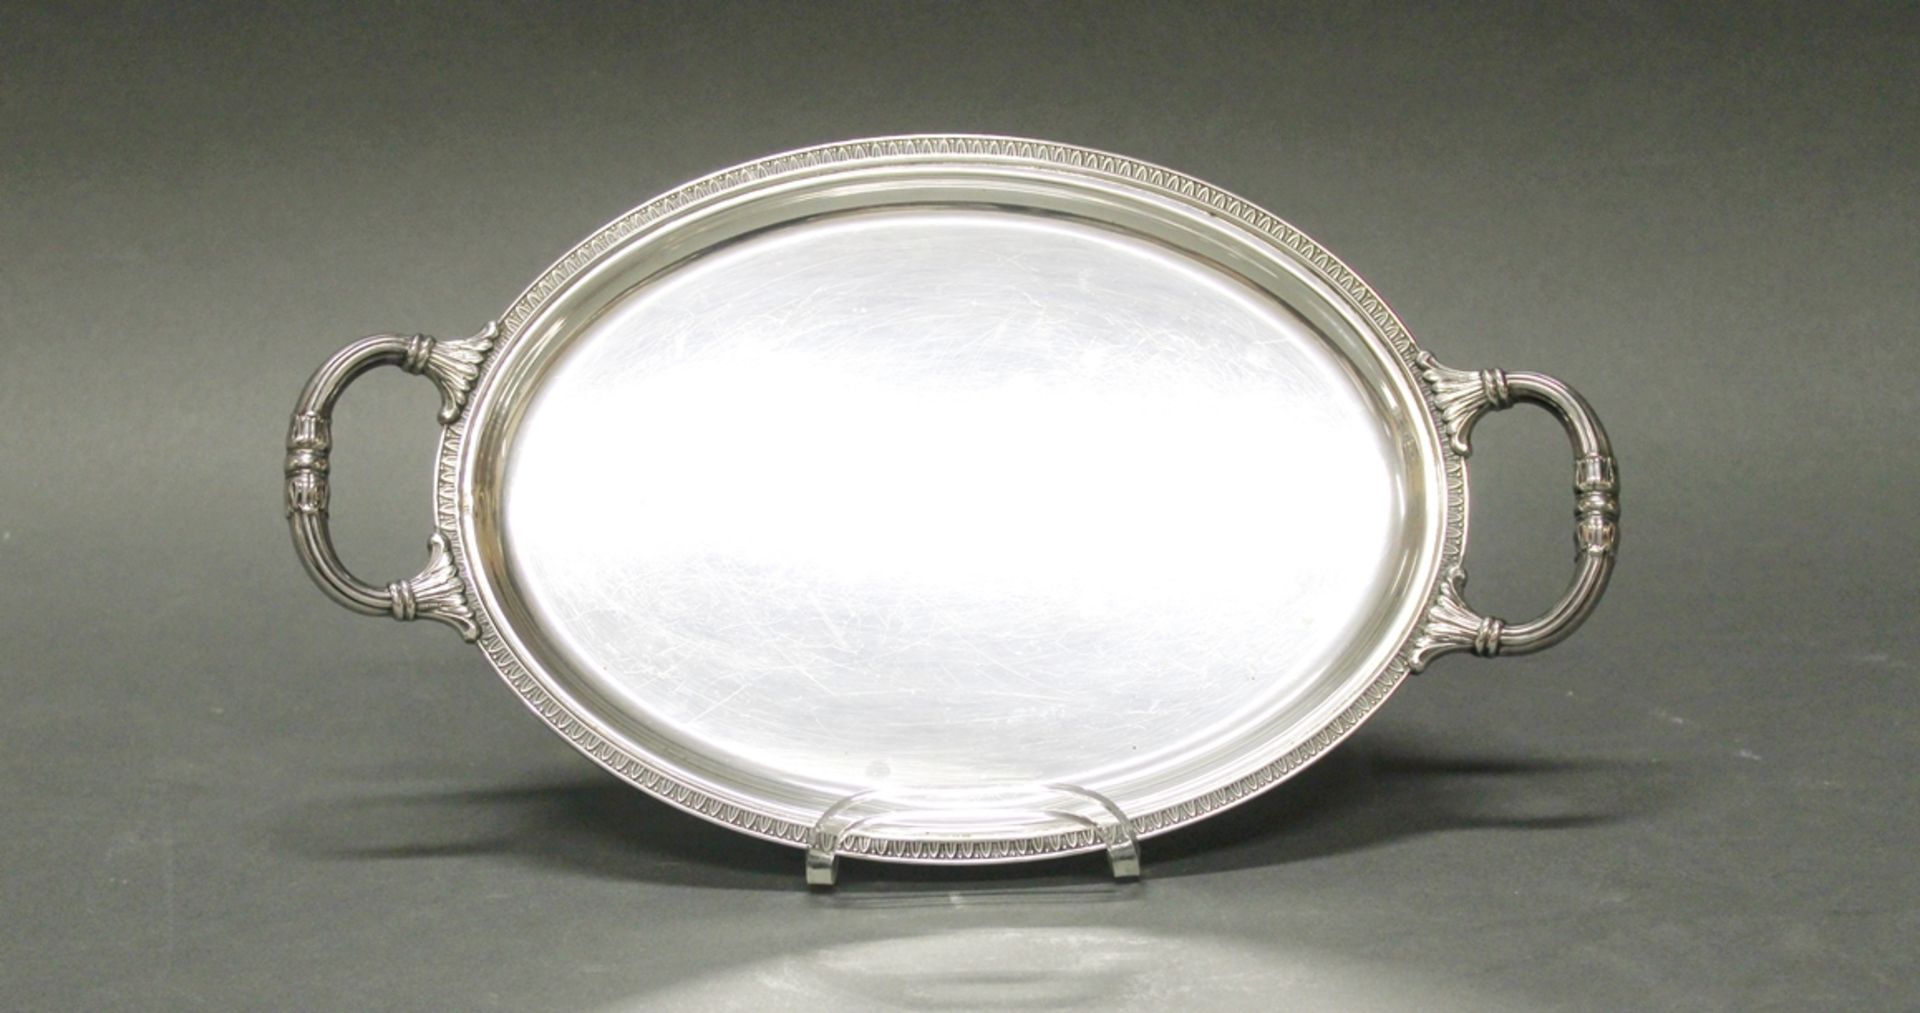 Tablett, Silber 800, Italien, oval, Rand mit Blattstab, zwei Handhaben, glatter Spiegel, 30.8 x 17.